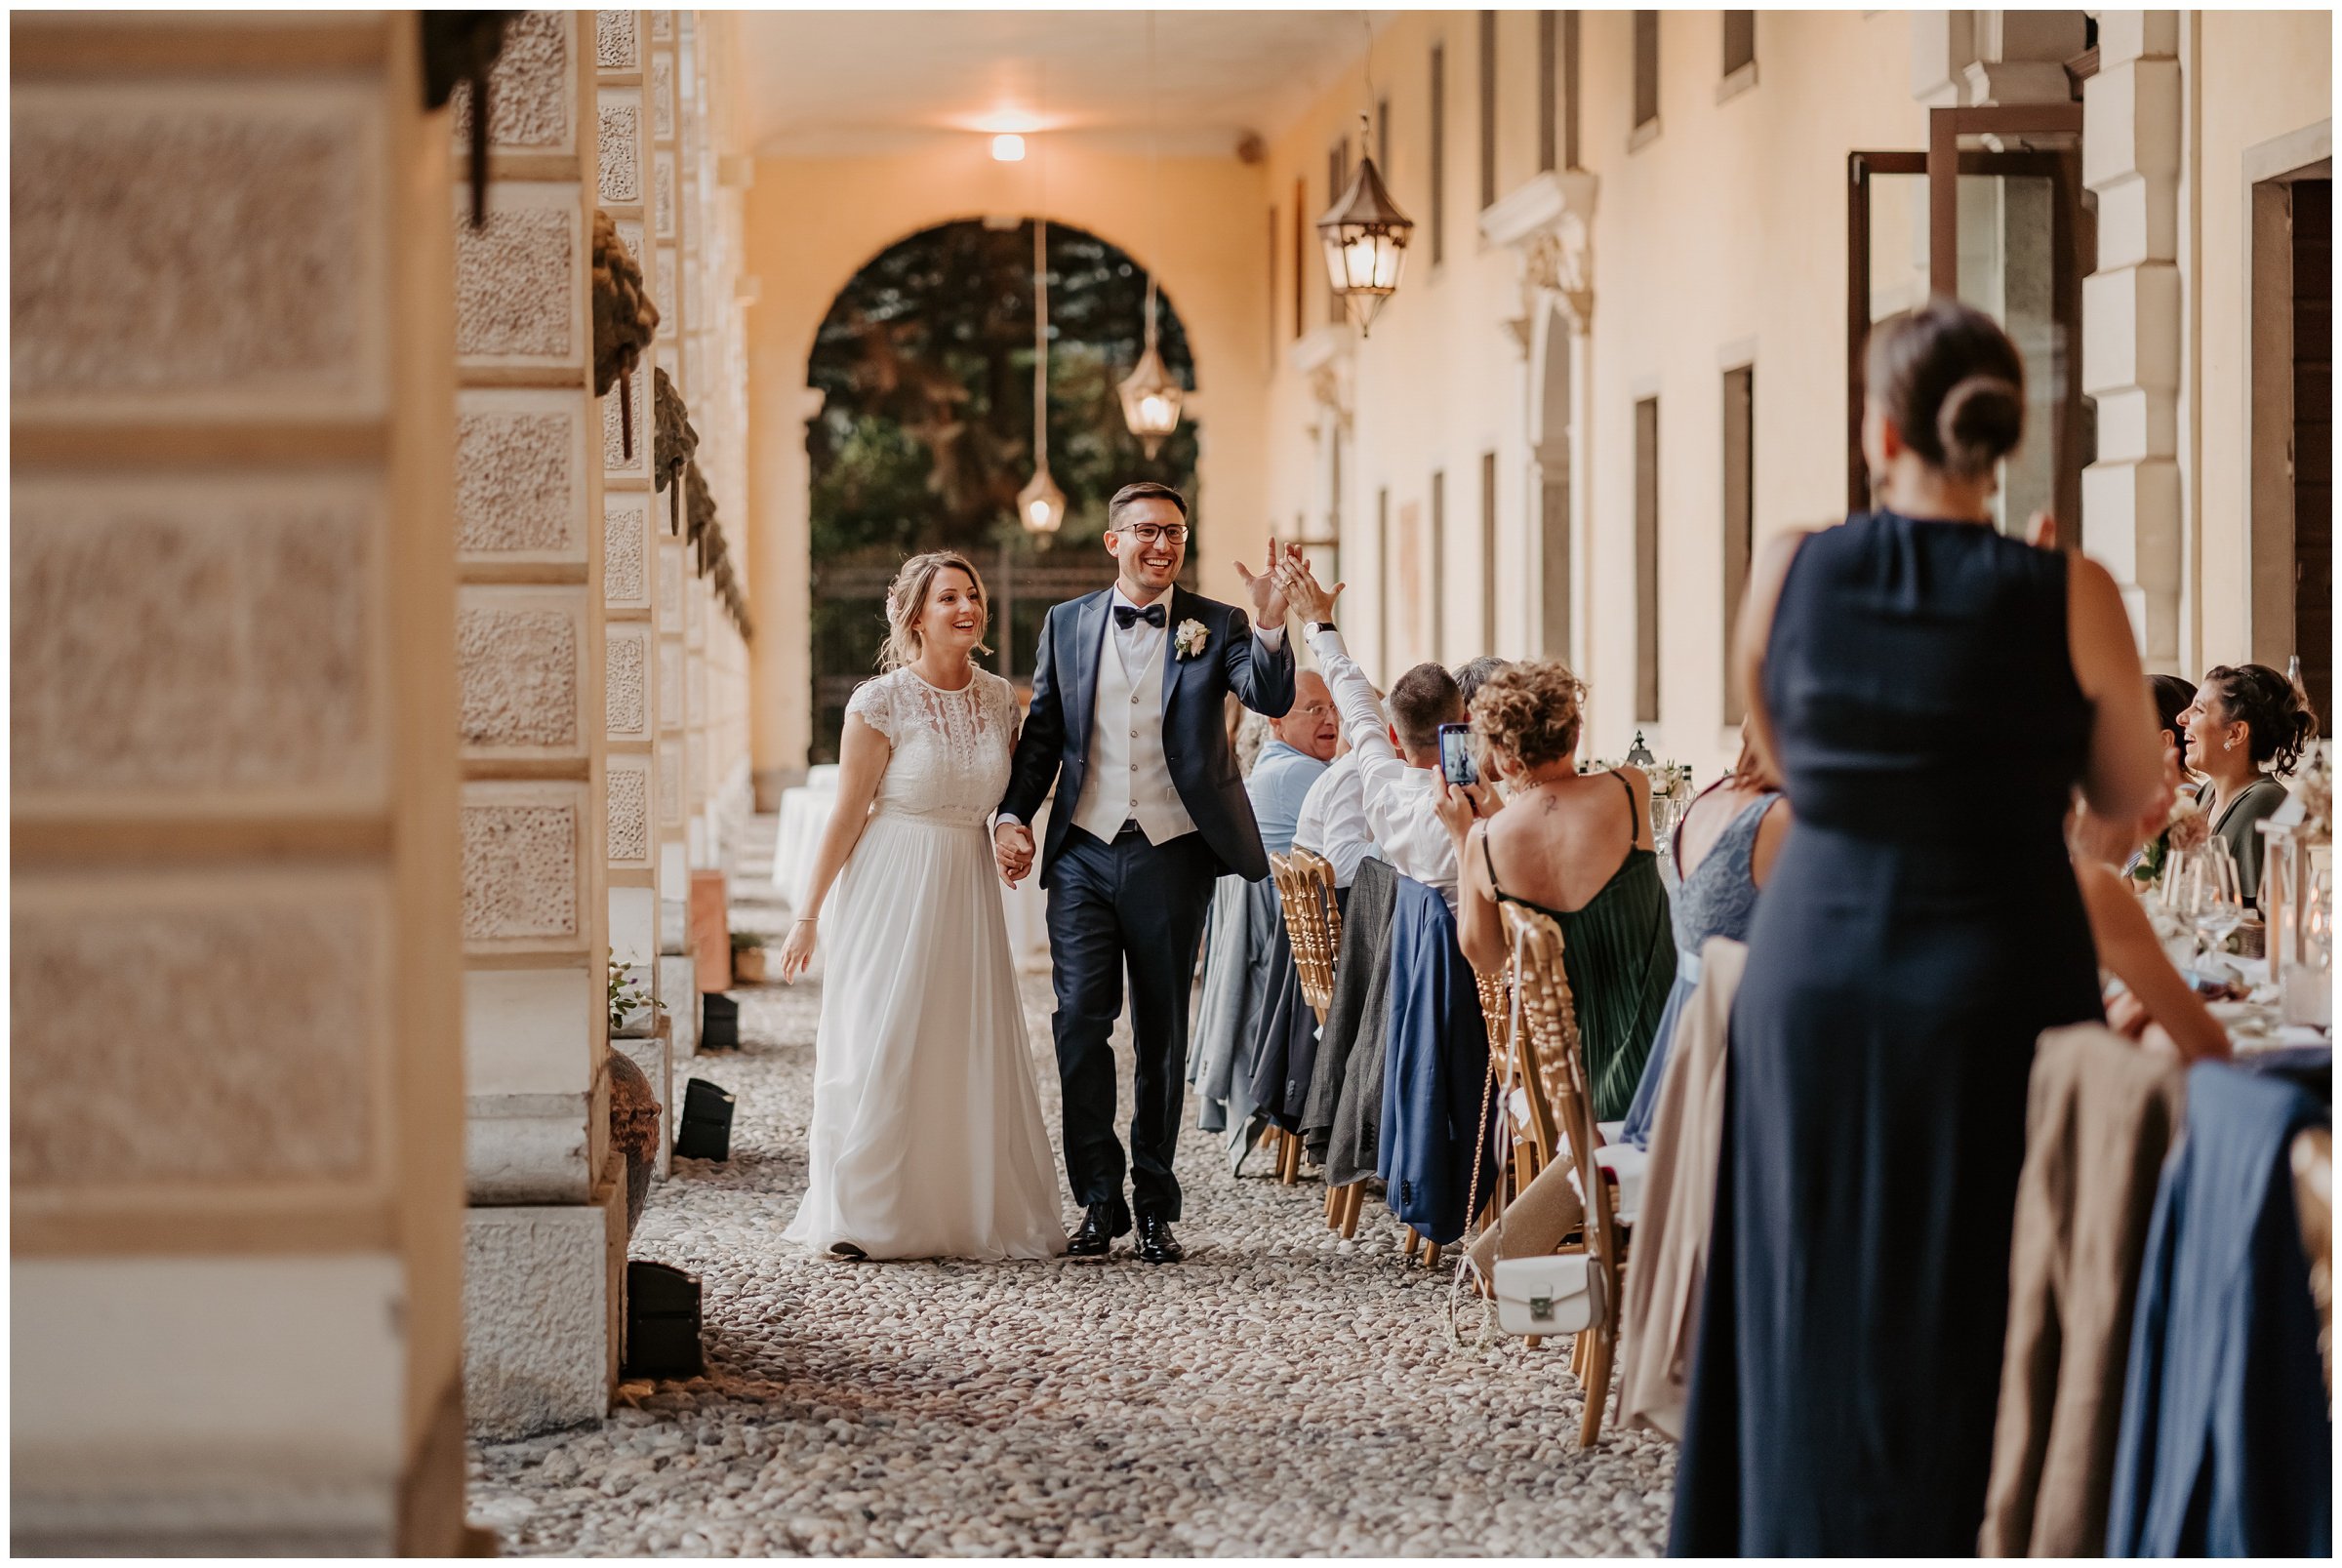 Matrimonio-villa-foscarini-cornaro-fotografo-matrimonio-treviso-fotografo-matrimonio-venezia-52.jpg